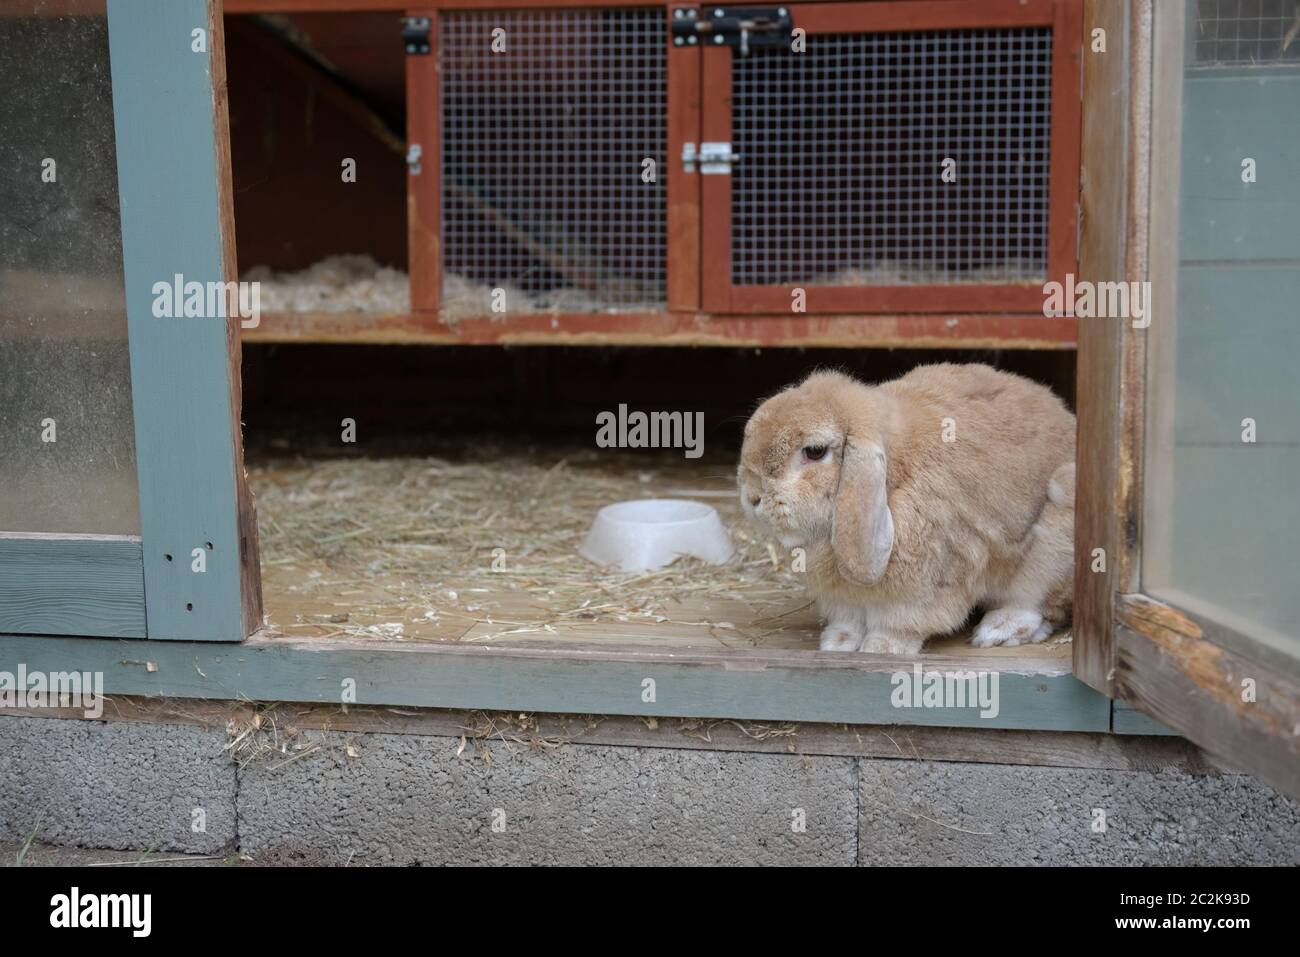 Petit lapin brun clair, beige ou sable nain pays-bas oreille de lop regarde dehors de la huche dans un hangar. Jeu de couleurs bleu sarcelle et orange. Huche de lapin. Banque D'Images